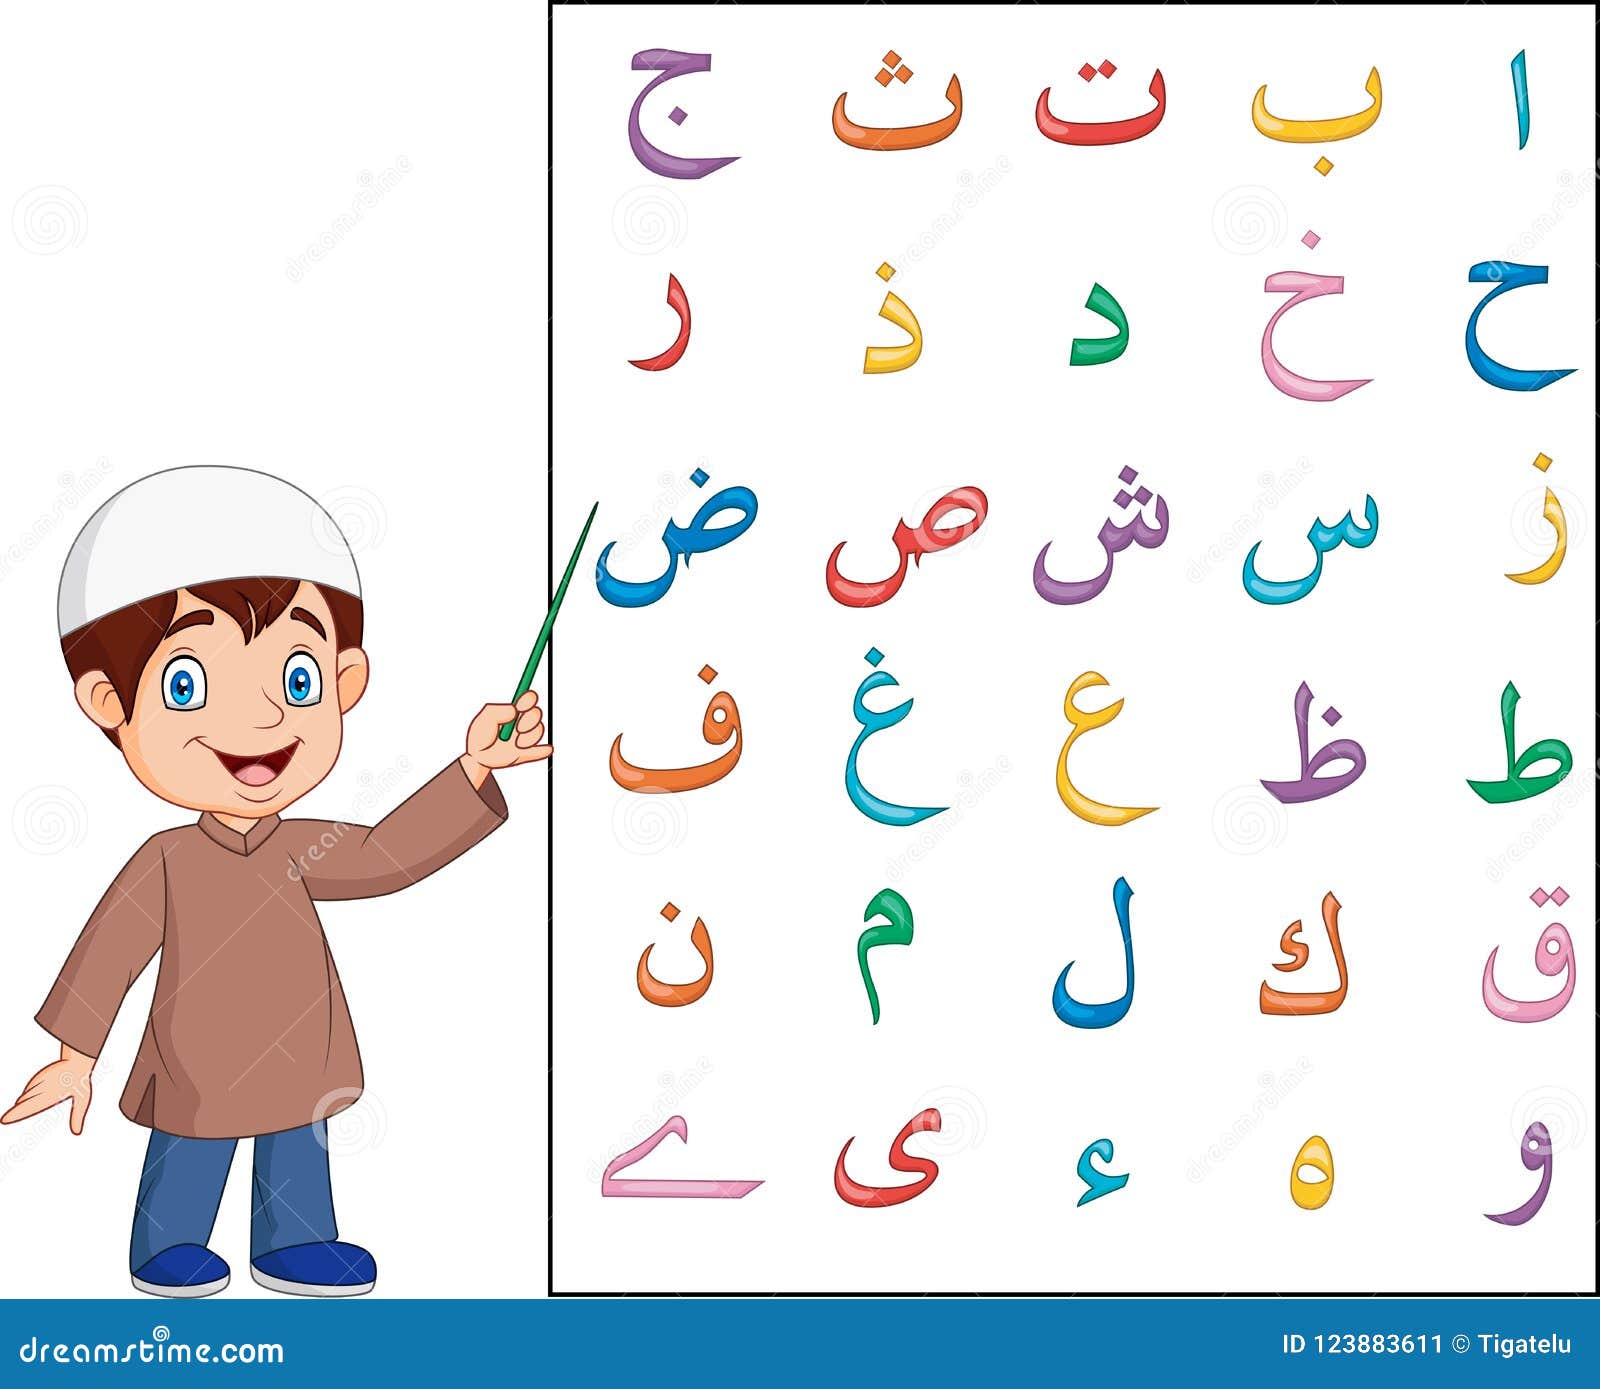 Включи арабский язык. Арабский алфавит Алиф. Арабский алфавит с Хамзой. Изучение арабского алфавита для детей. Арабские буквы для детей.